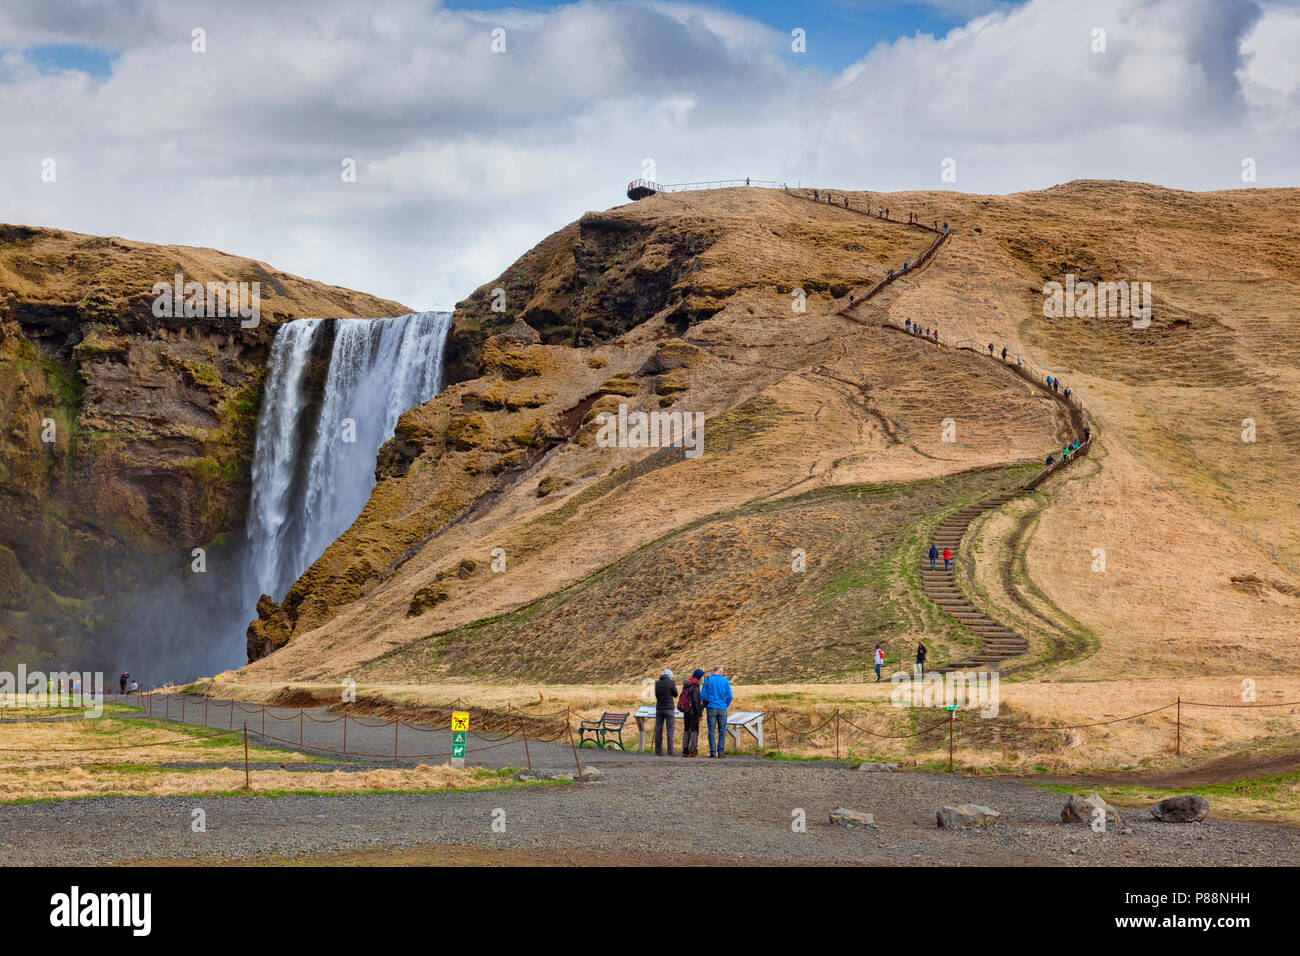 22 Aprile 2018: Skogar, Sud Islanda - Skogafoss cascata, e le scale fino alla piattaforma di osservazione. Foto Stock